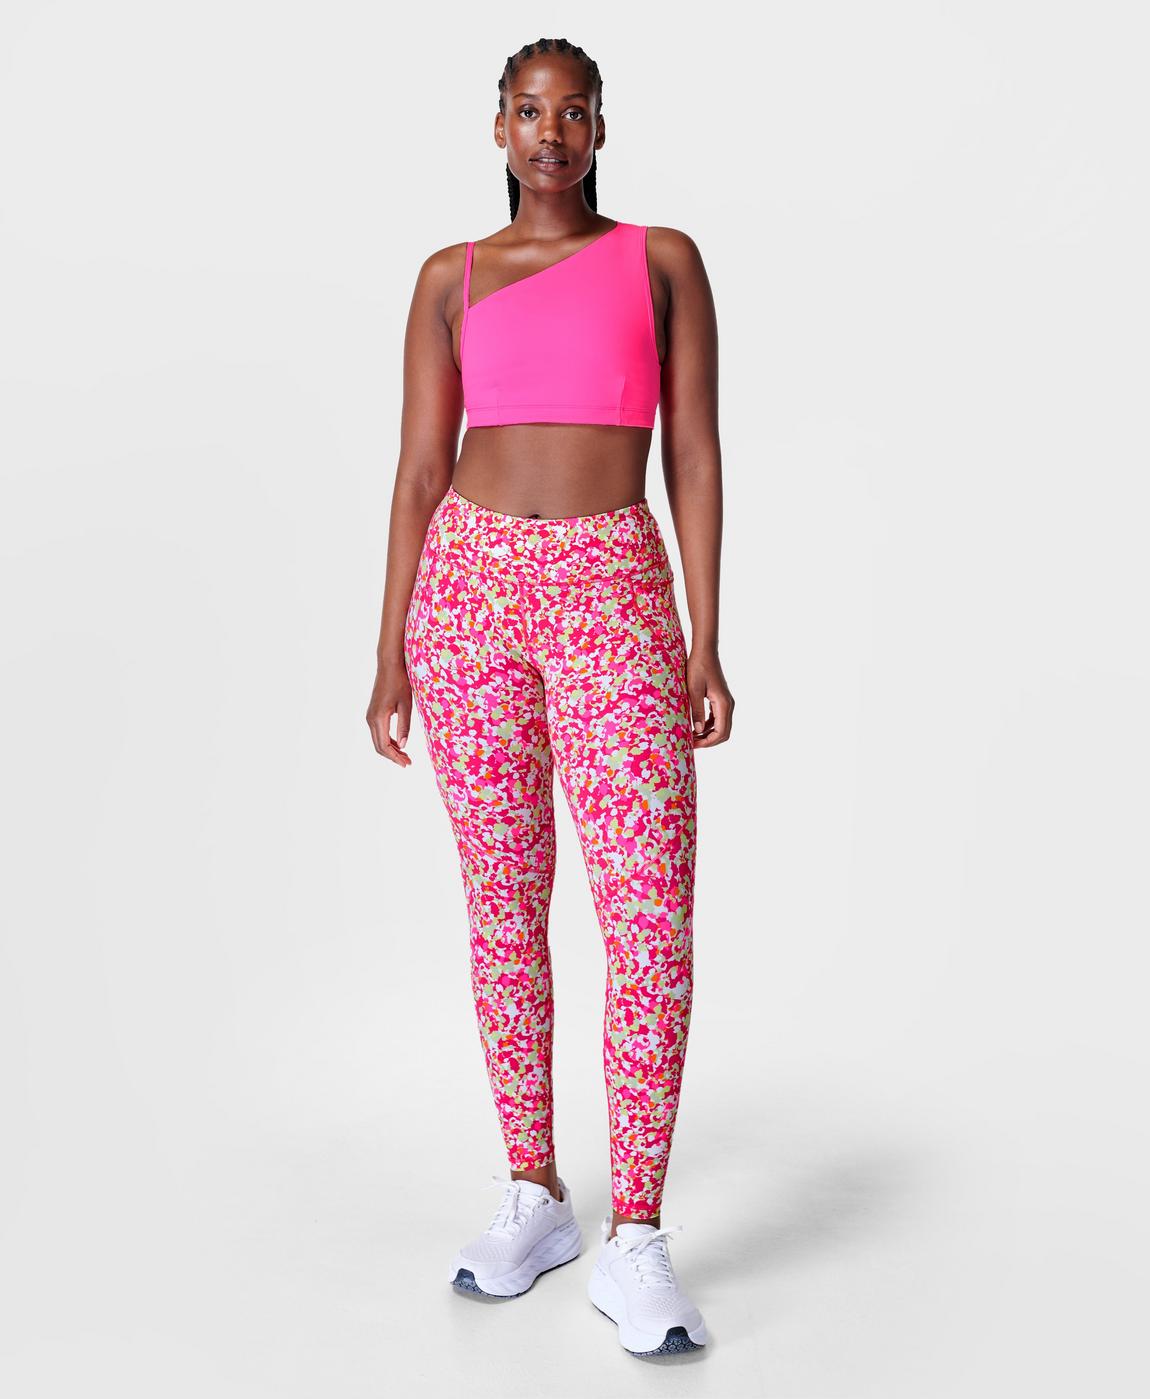 Power Workout Leggings - Pink Dab Print, Women's Leggings